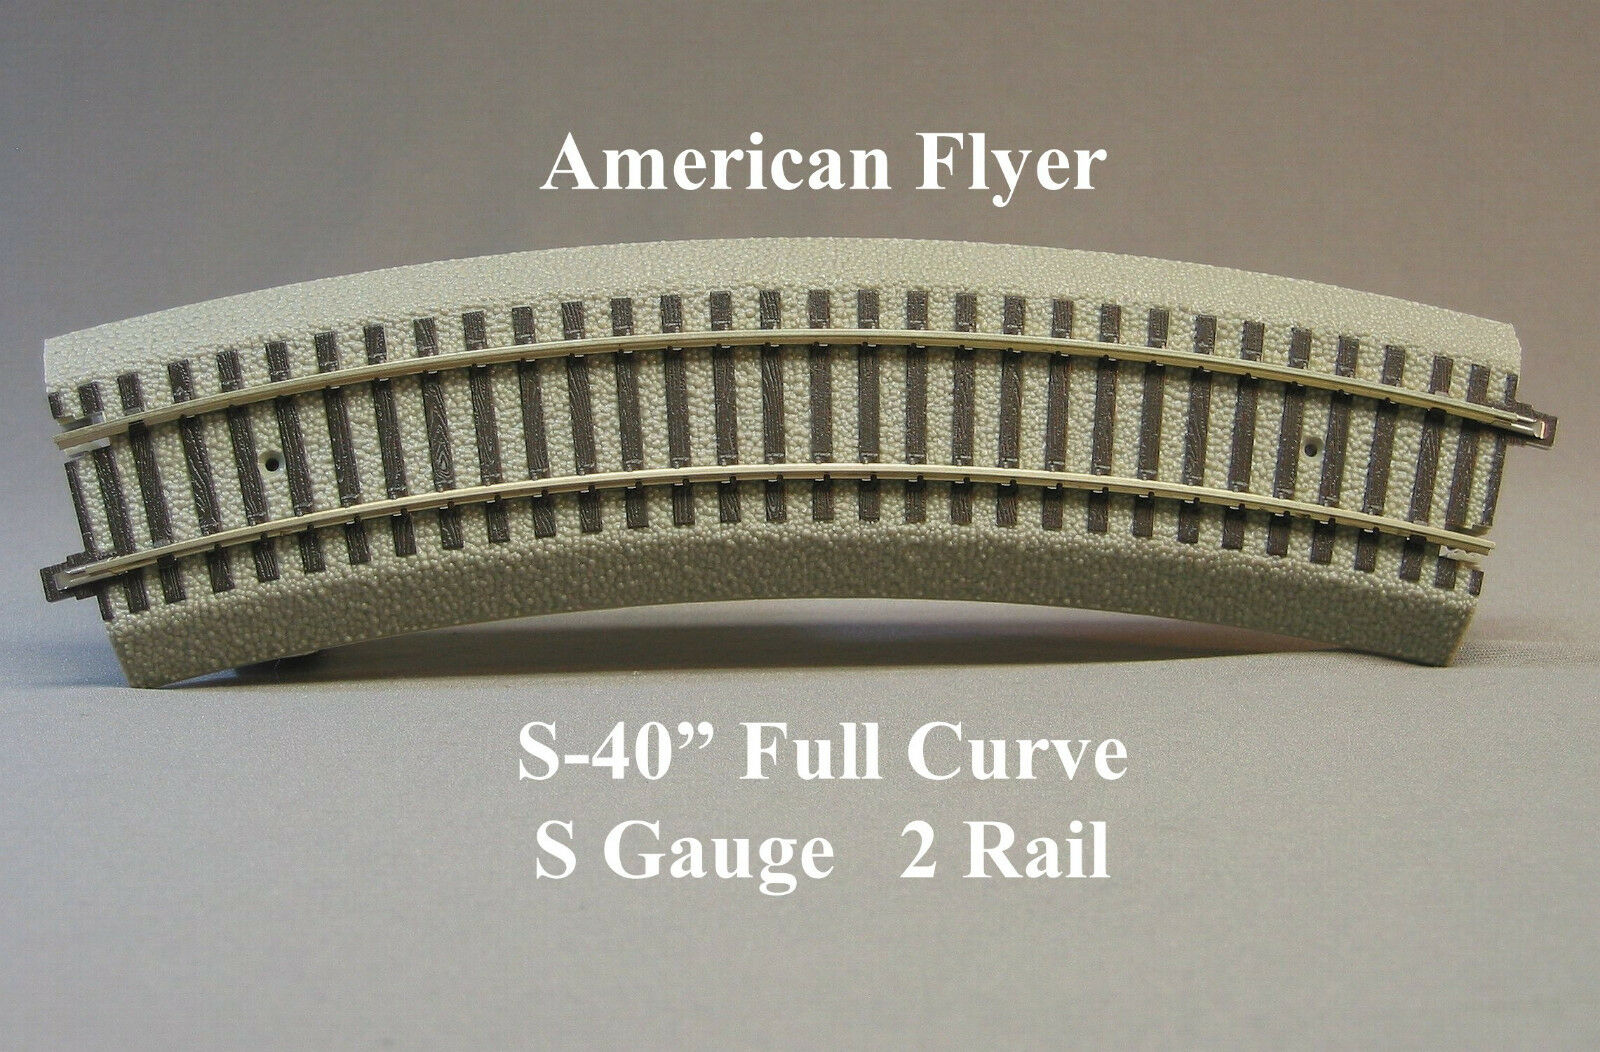 Lionel American Flyer Fastrack R20 Curve S Gauge Af 2 Rail 40" Train 6-49853 New